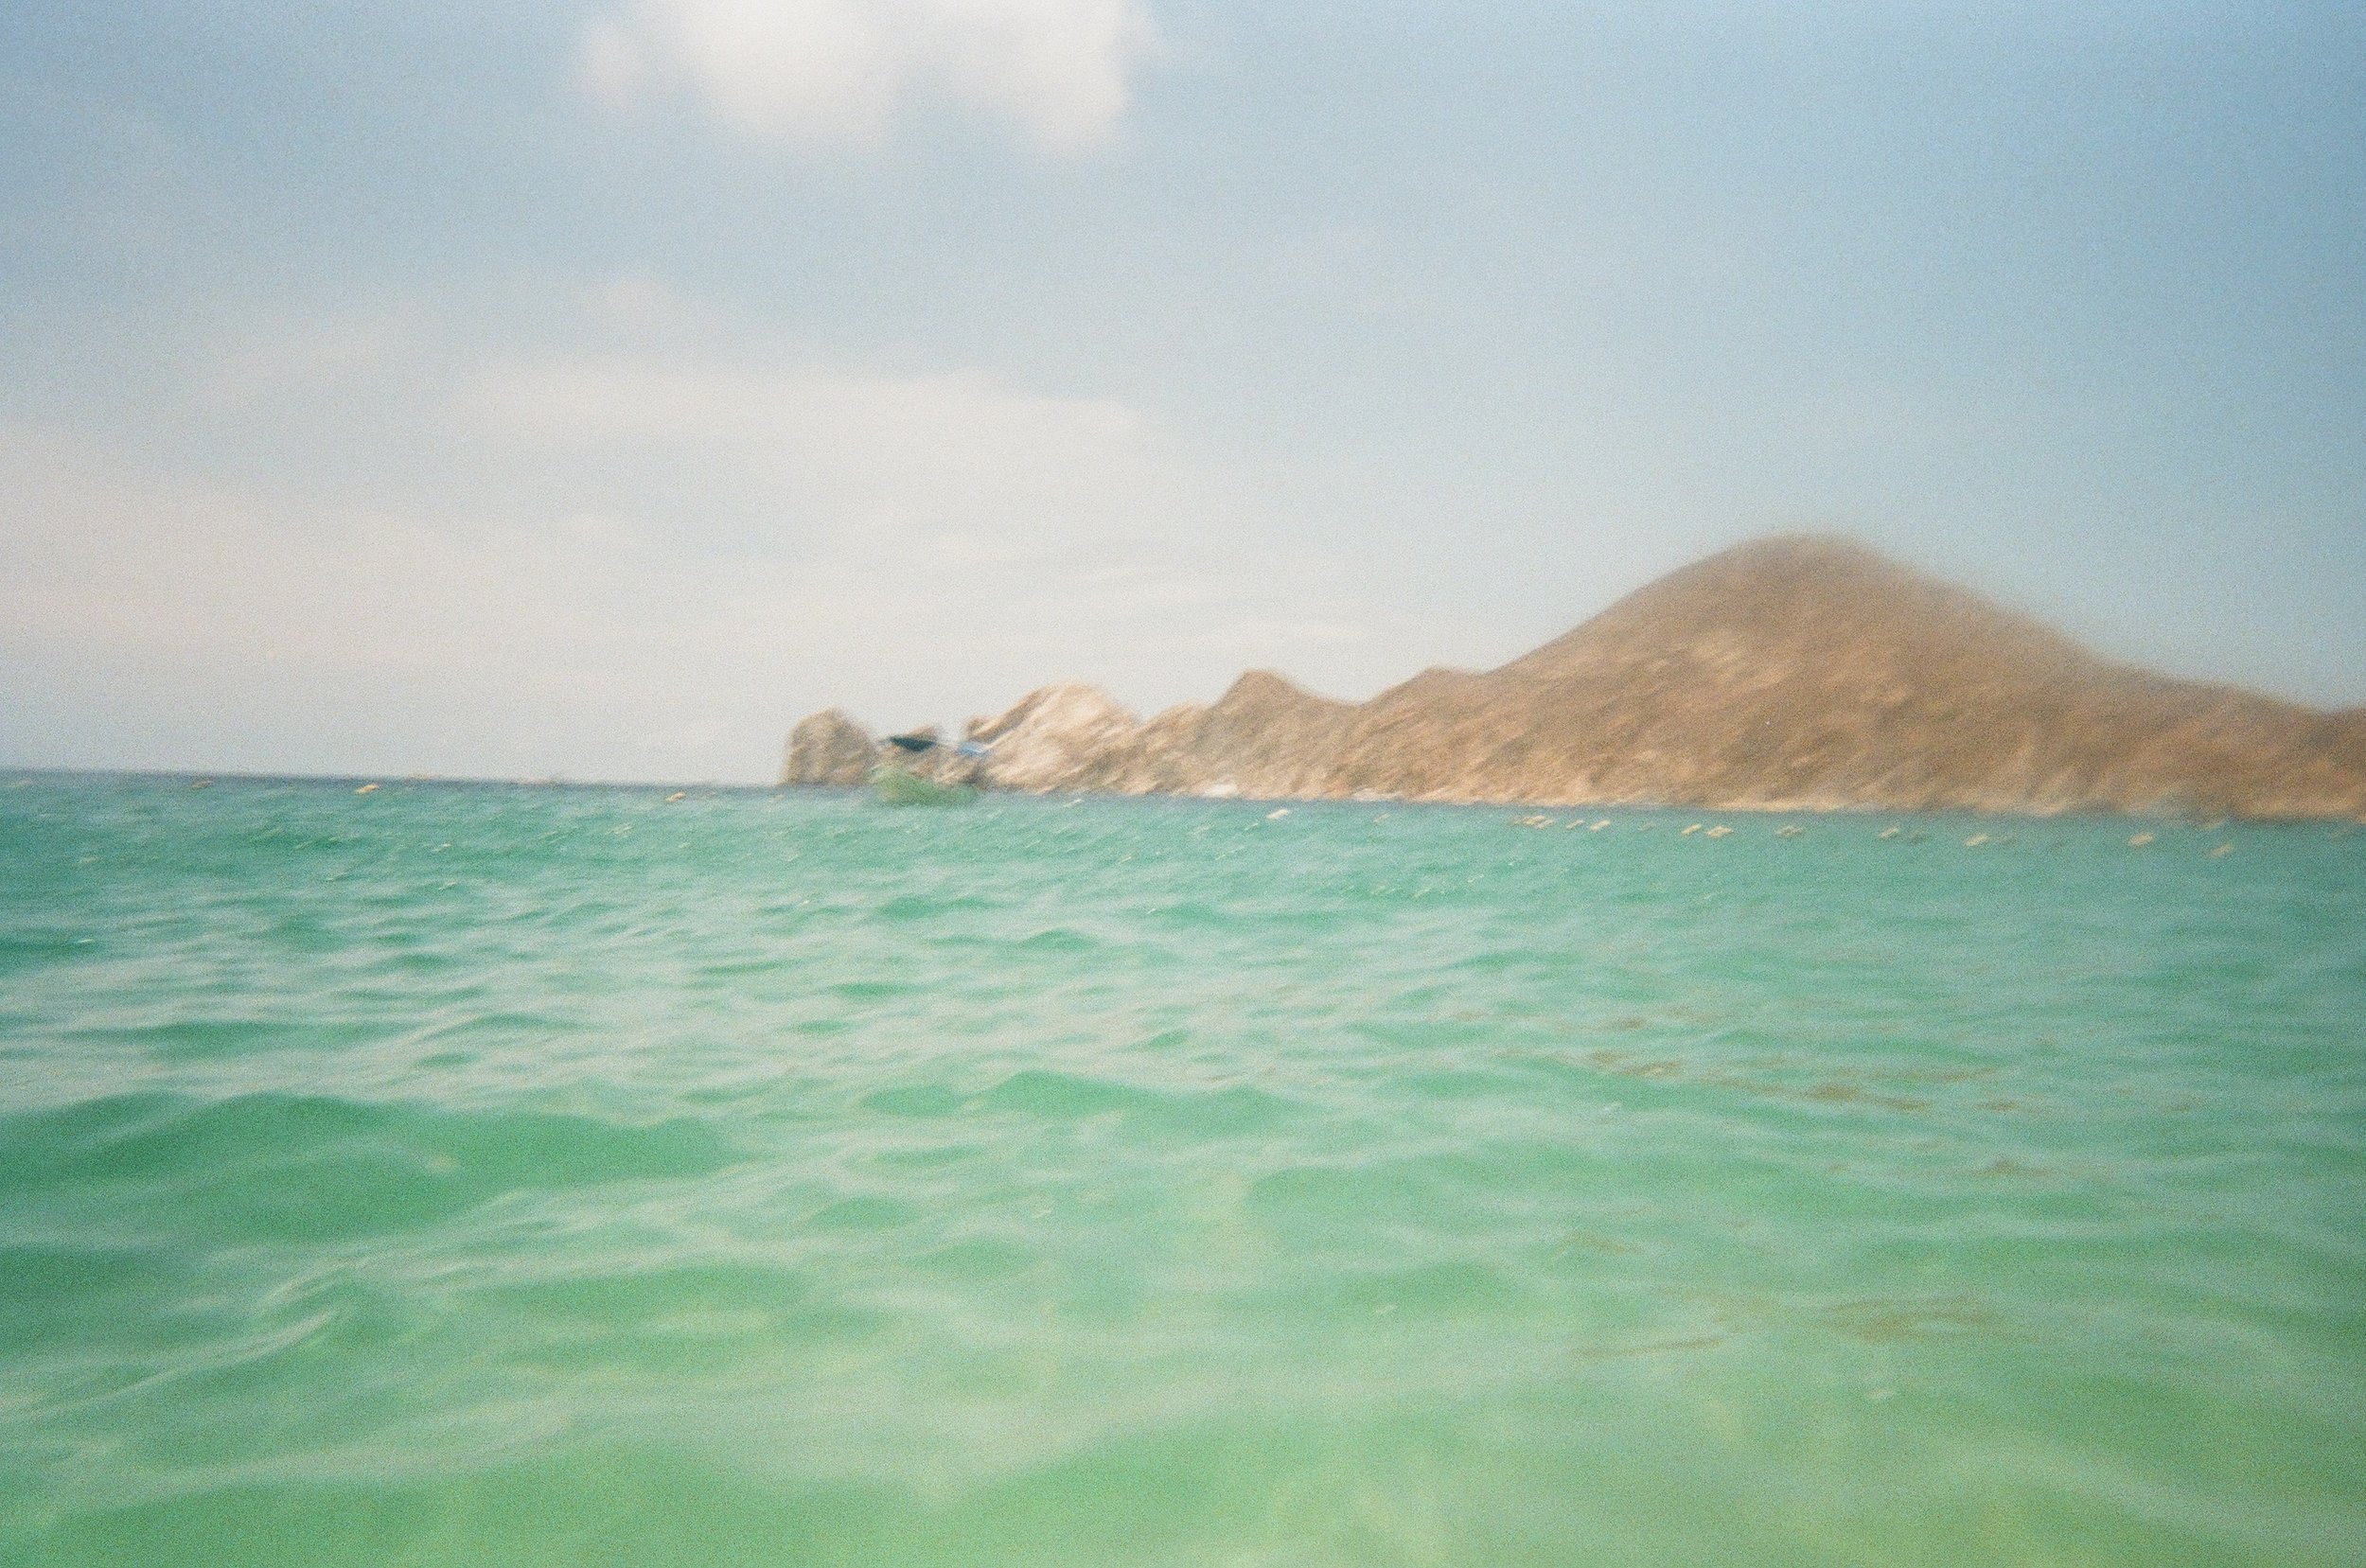 shooting 35mm film in the ocean